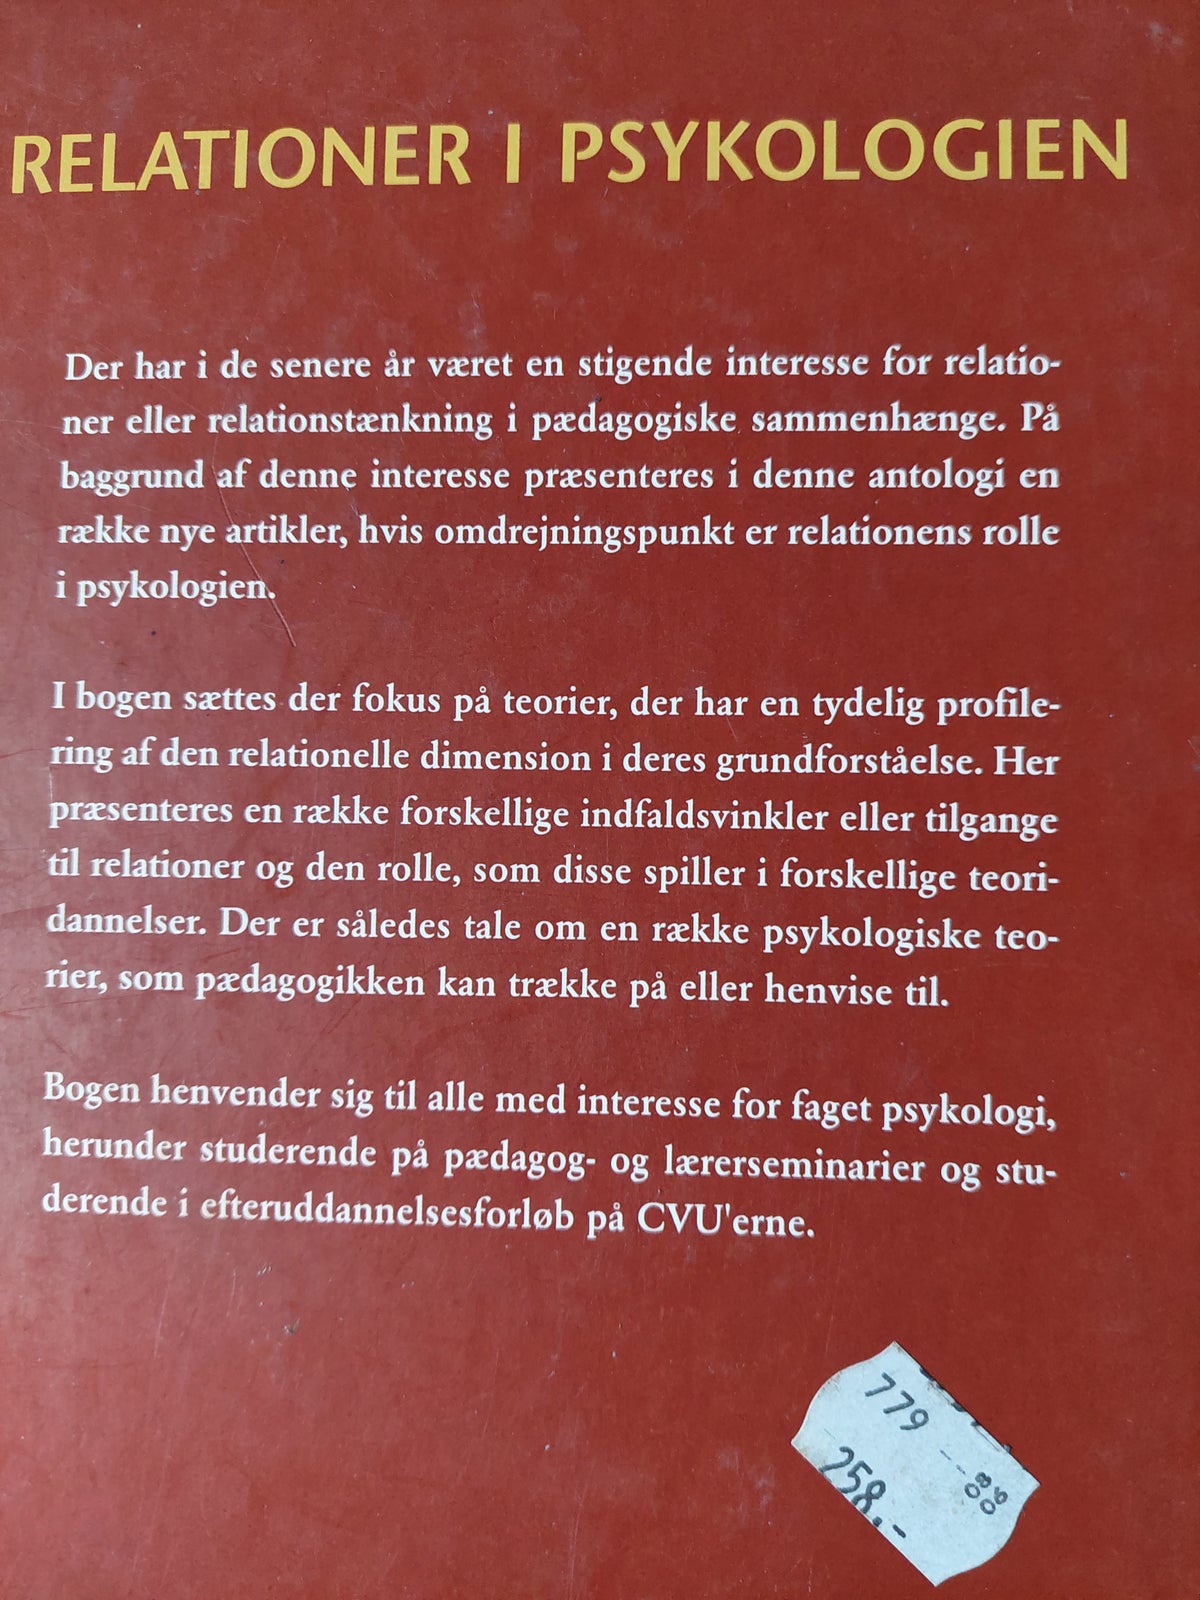 Relationer i Psykologien , Tom Ritchie, år 2005